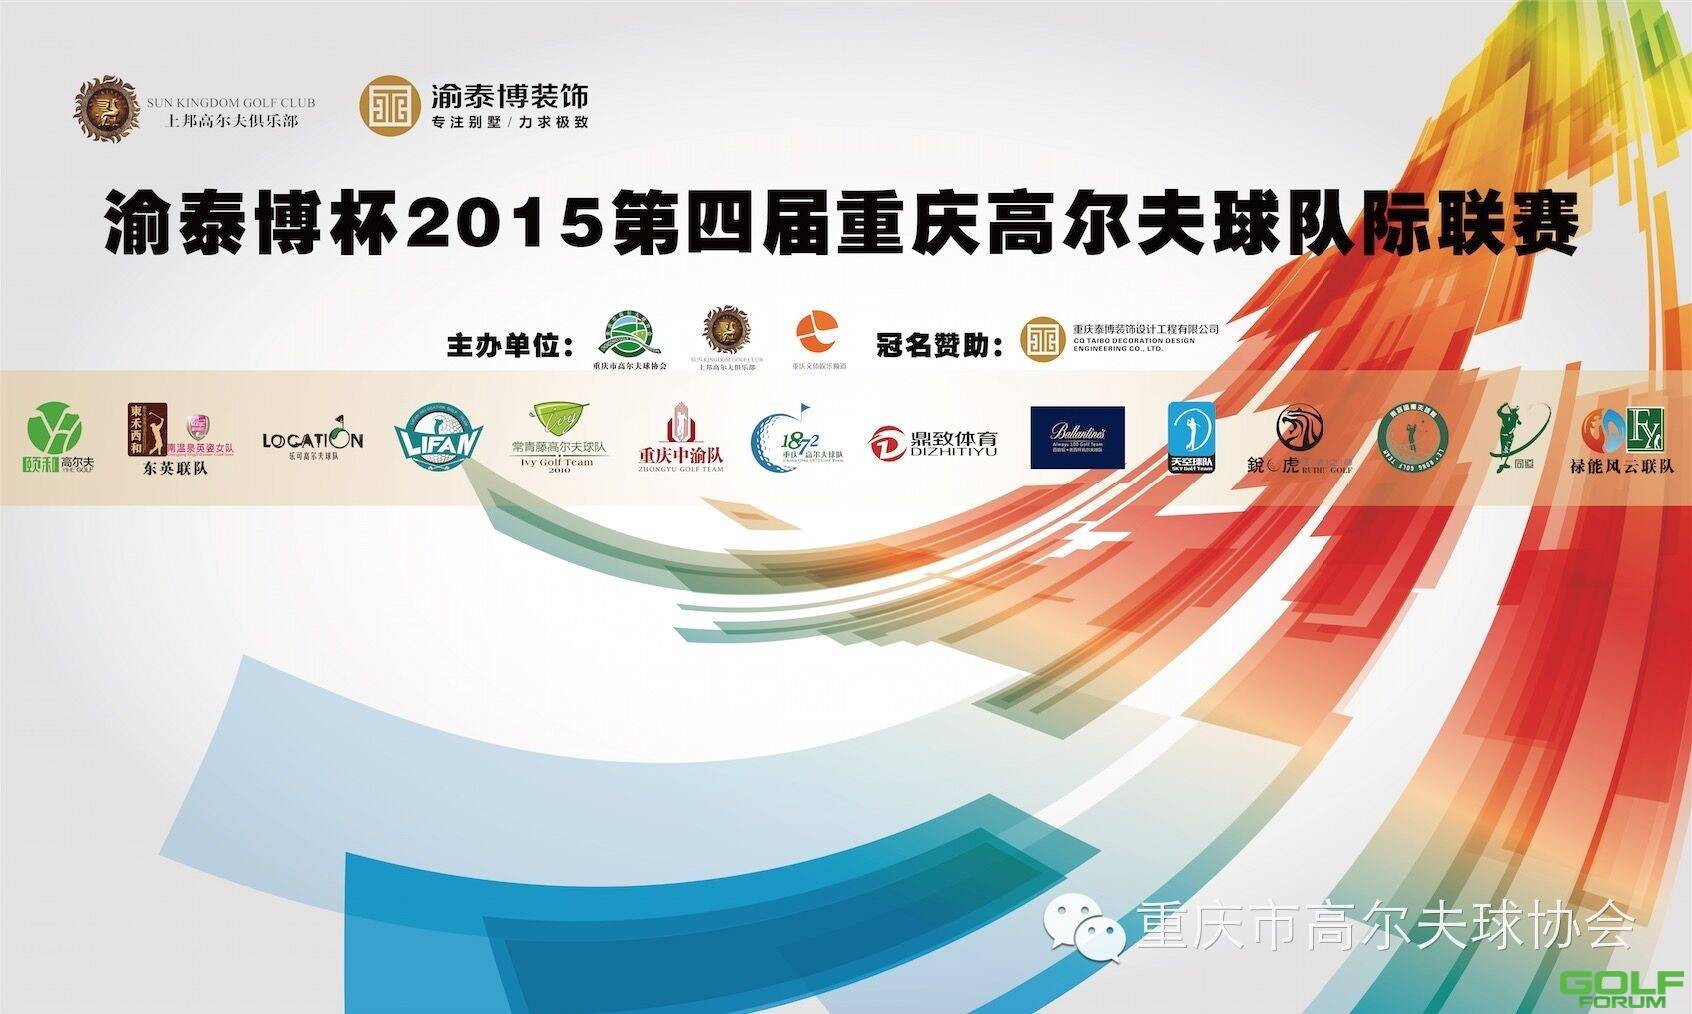 渝泰博杯2015第四届重庆高尔夫球队际联赛顺利开幕